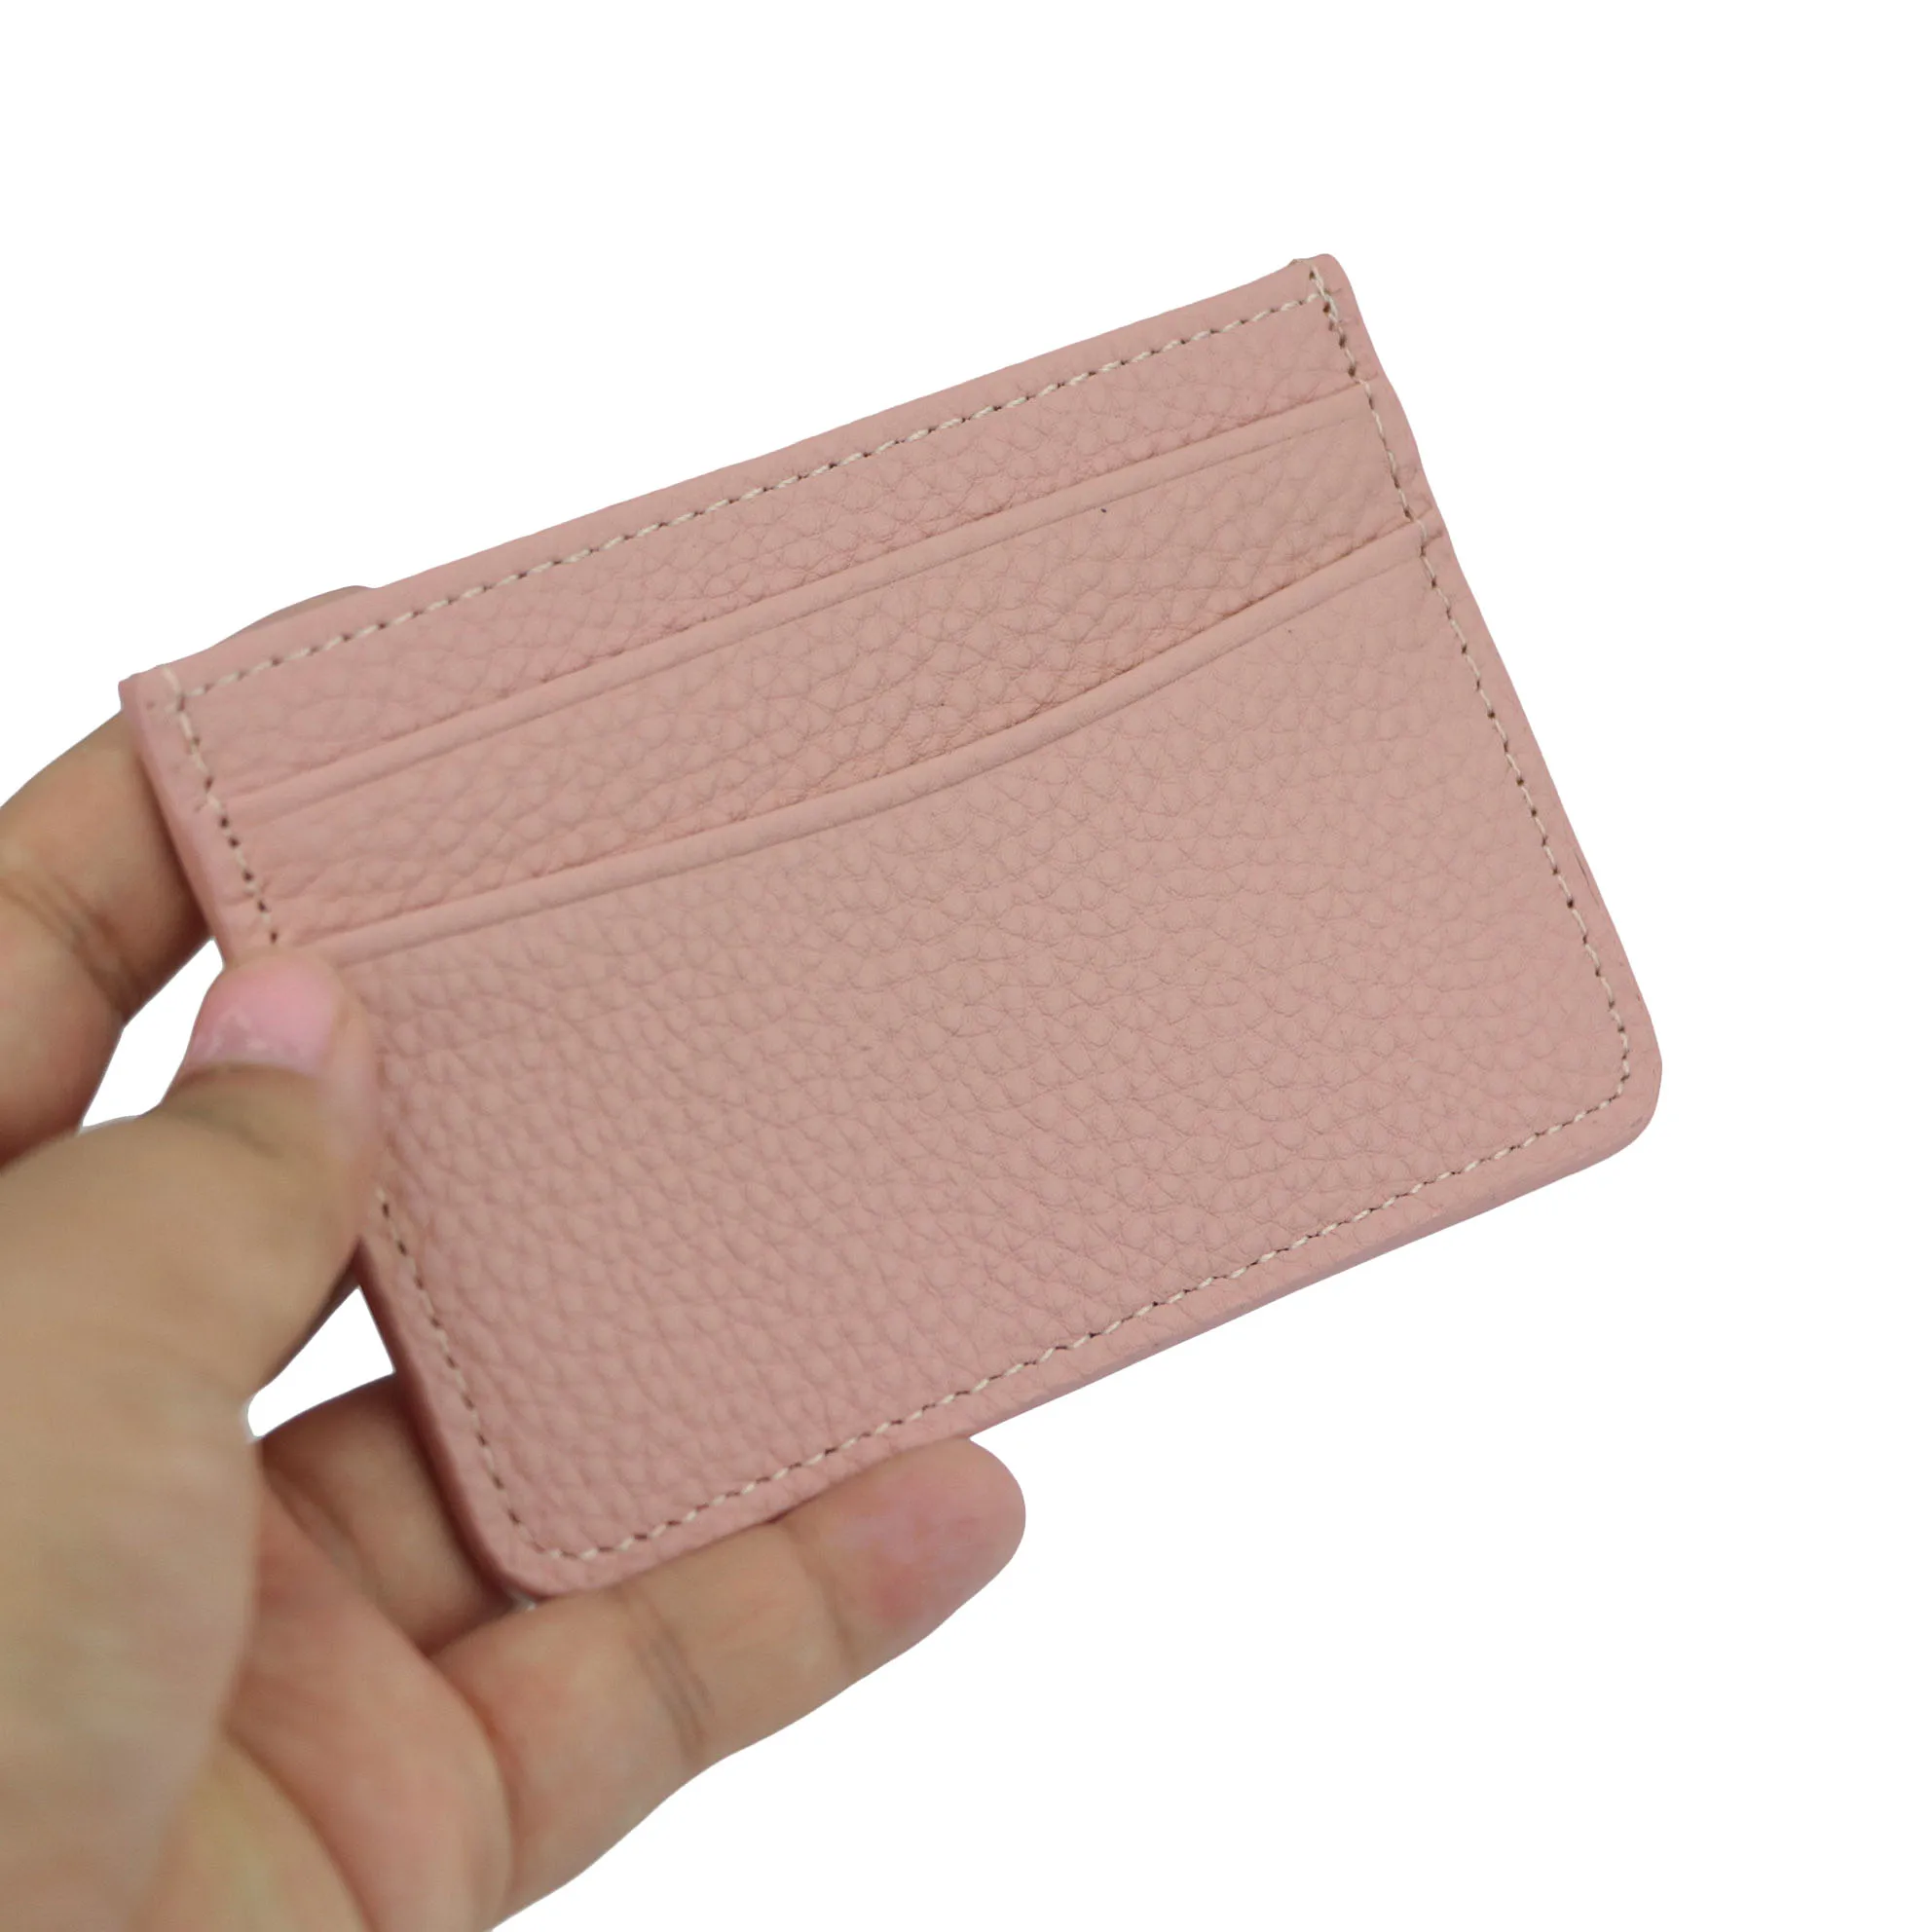 clássico padrão de seixos titular do cartão de couro genuíno das mulheres dos homens caso de cartão de crédito id titular do cartão carteira bolsa